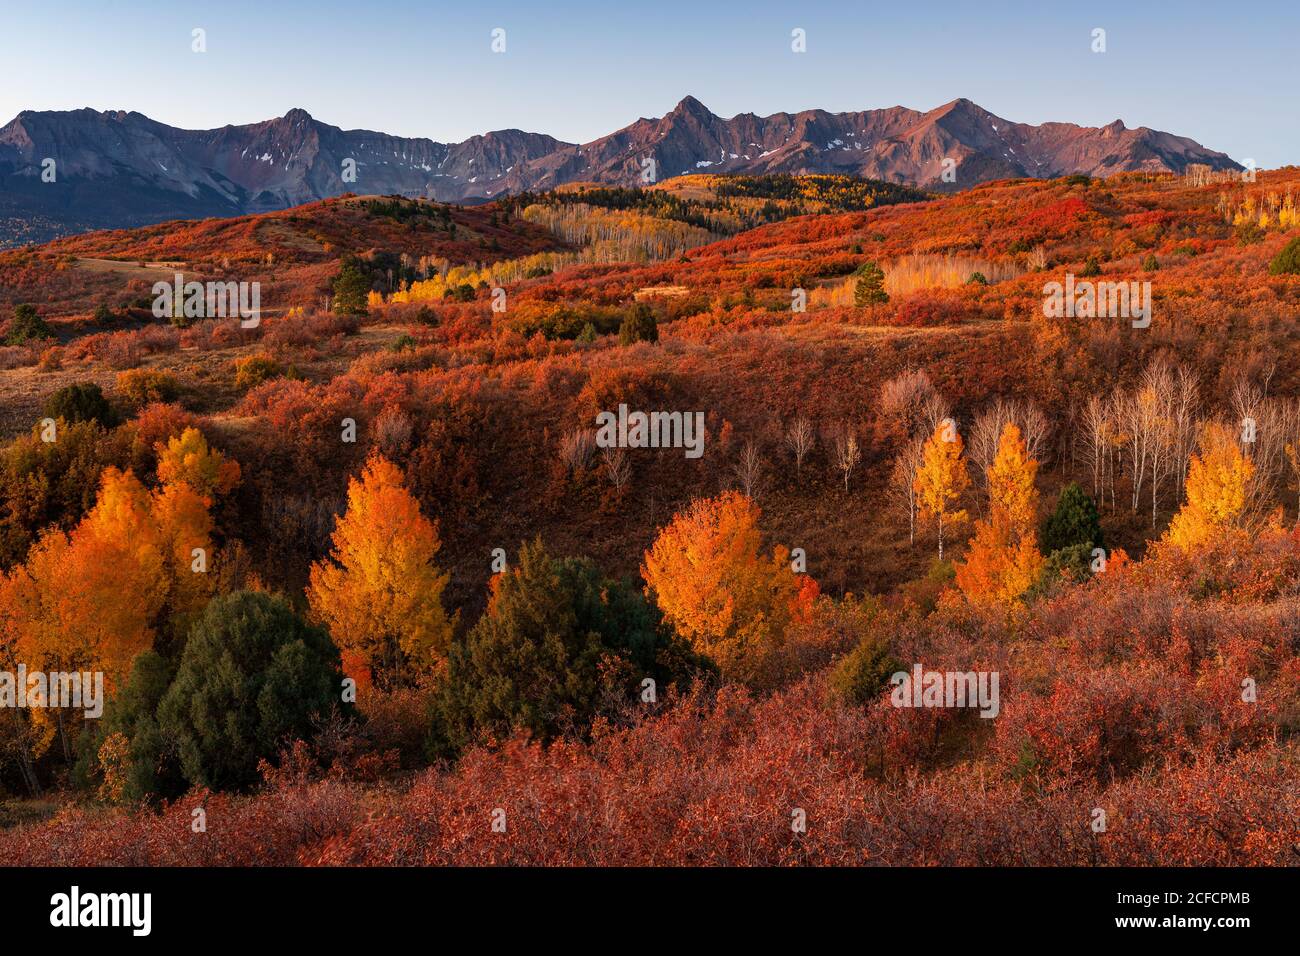 Dallas diviser le paysage pittoresque avec les arbres d'Aspen et les couleurs d'automne dans les montagnes de San Juan, Colorado Banque D'Images